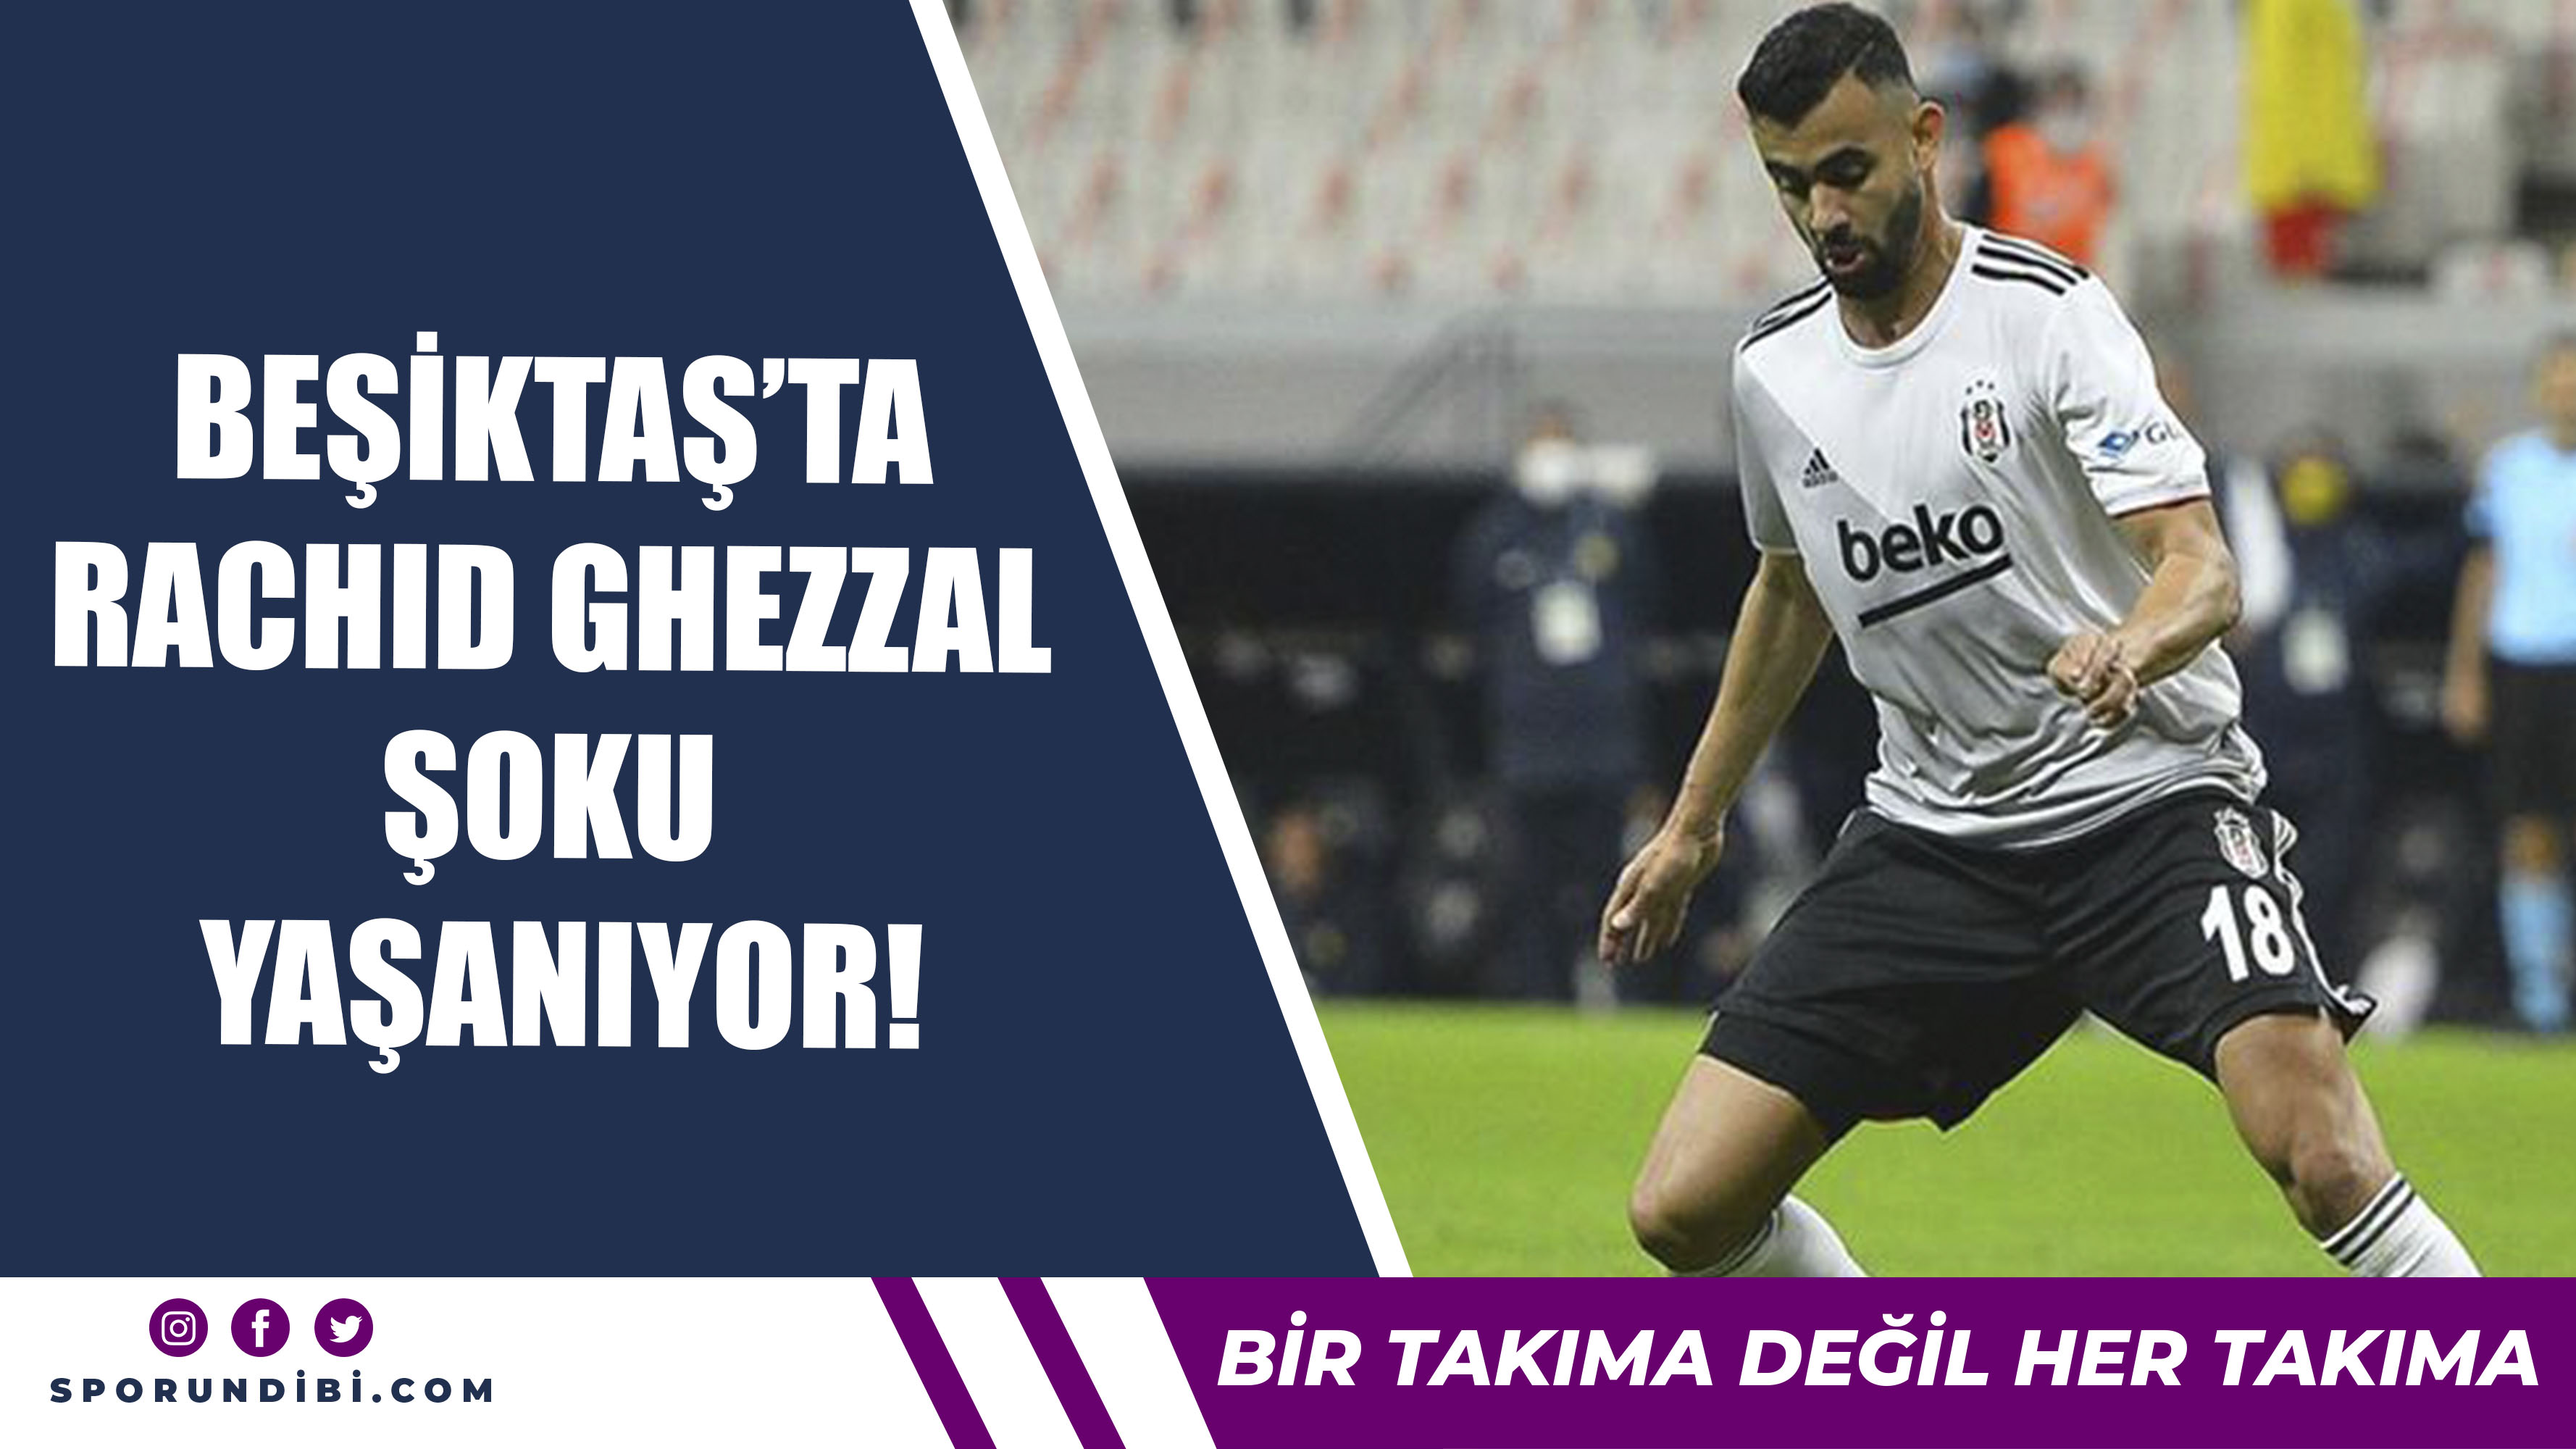 Beşiktaş'ta Ghezzal Şoku Yaşanıyor!